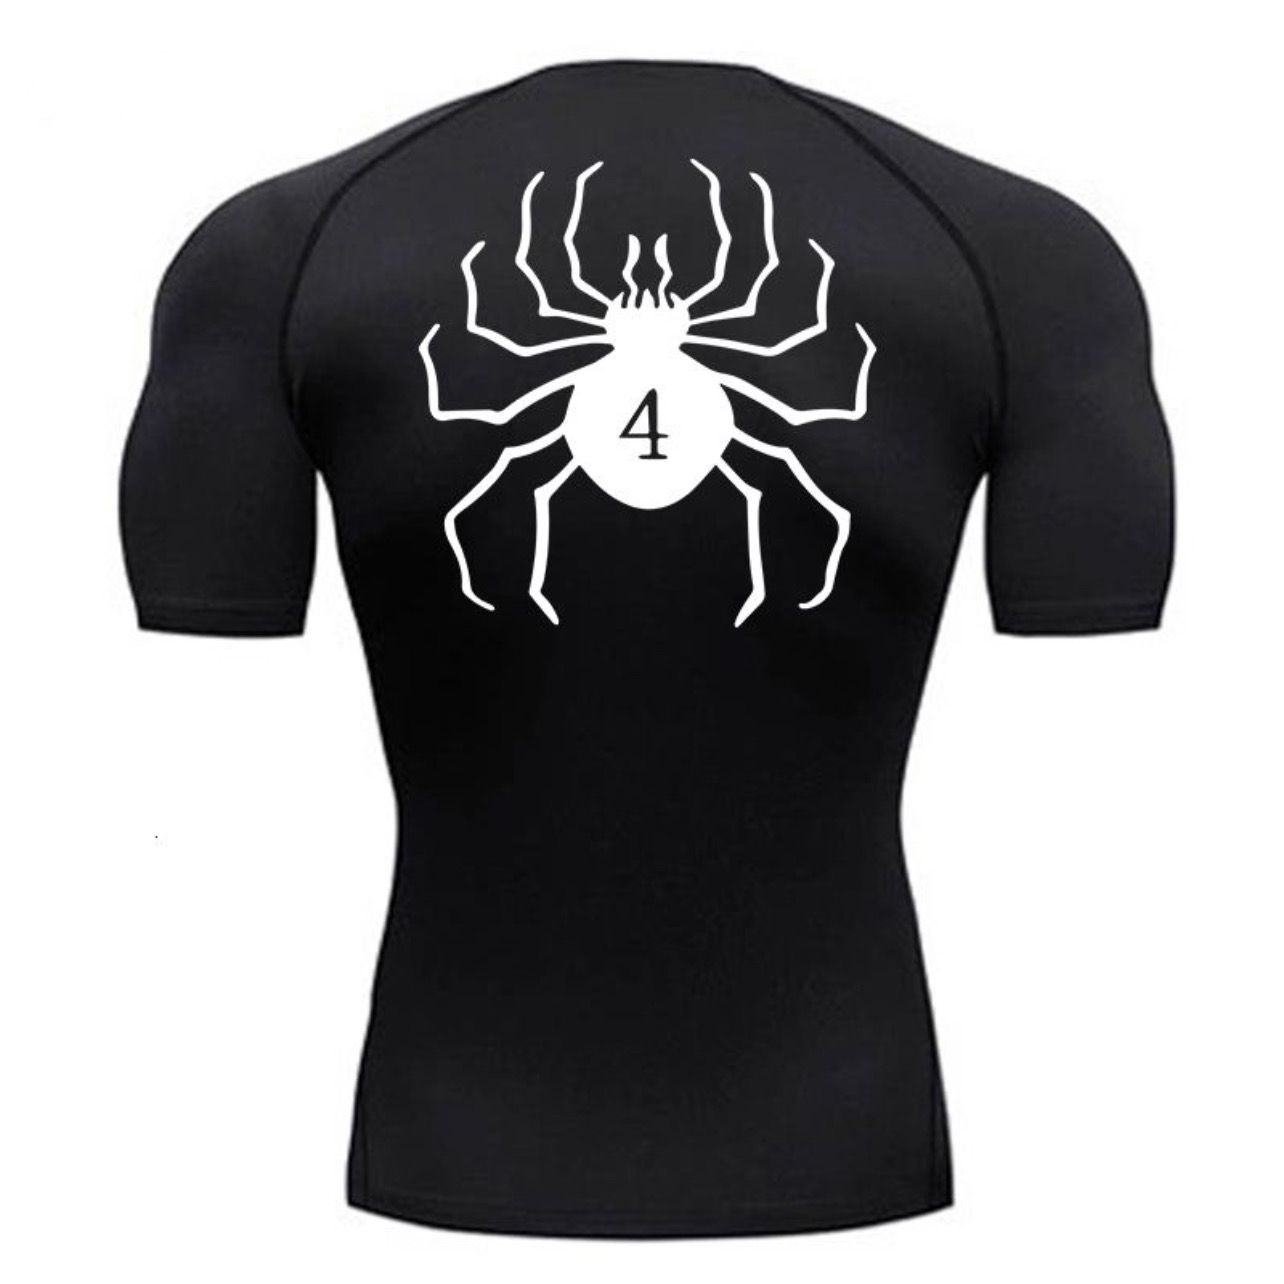 Phantom spider compression shirt